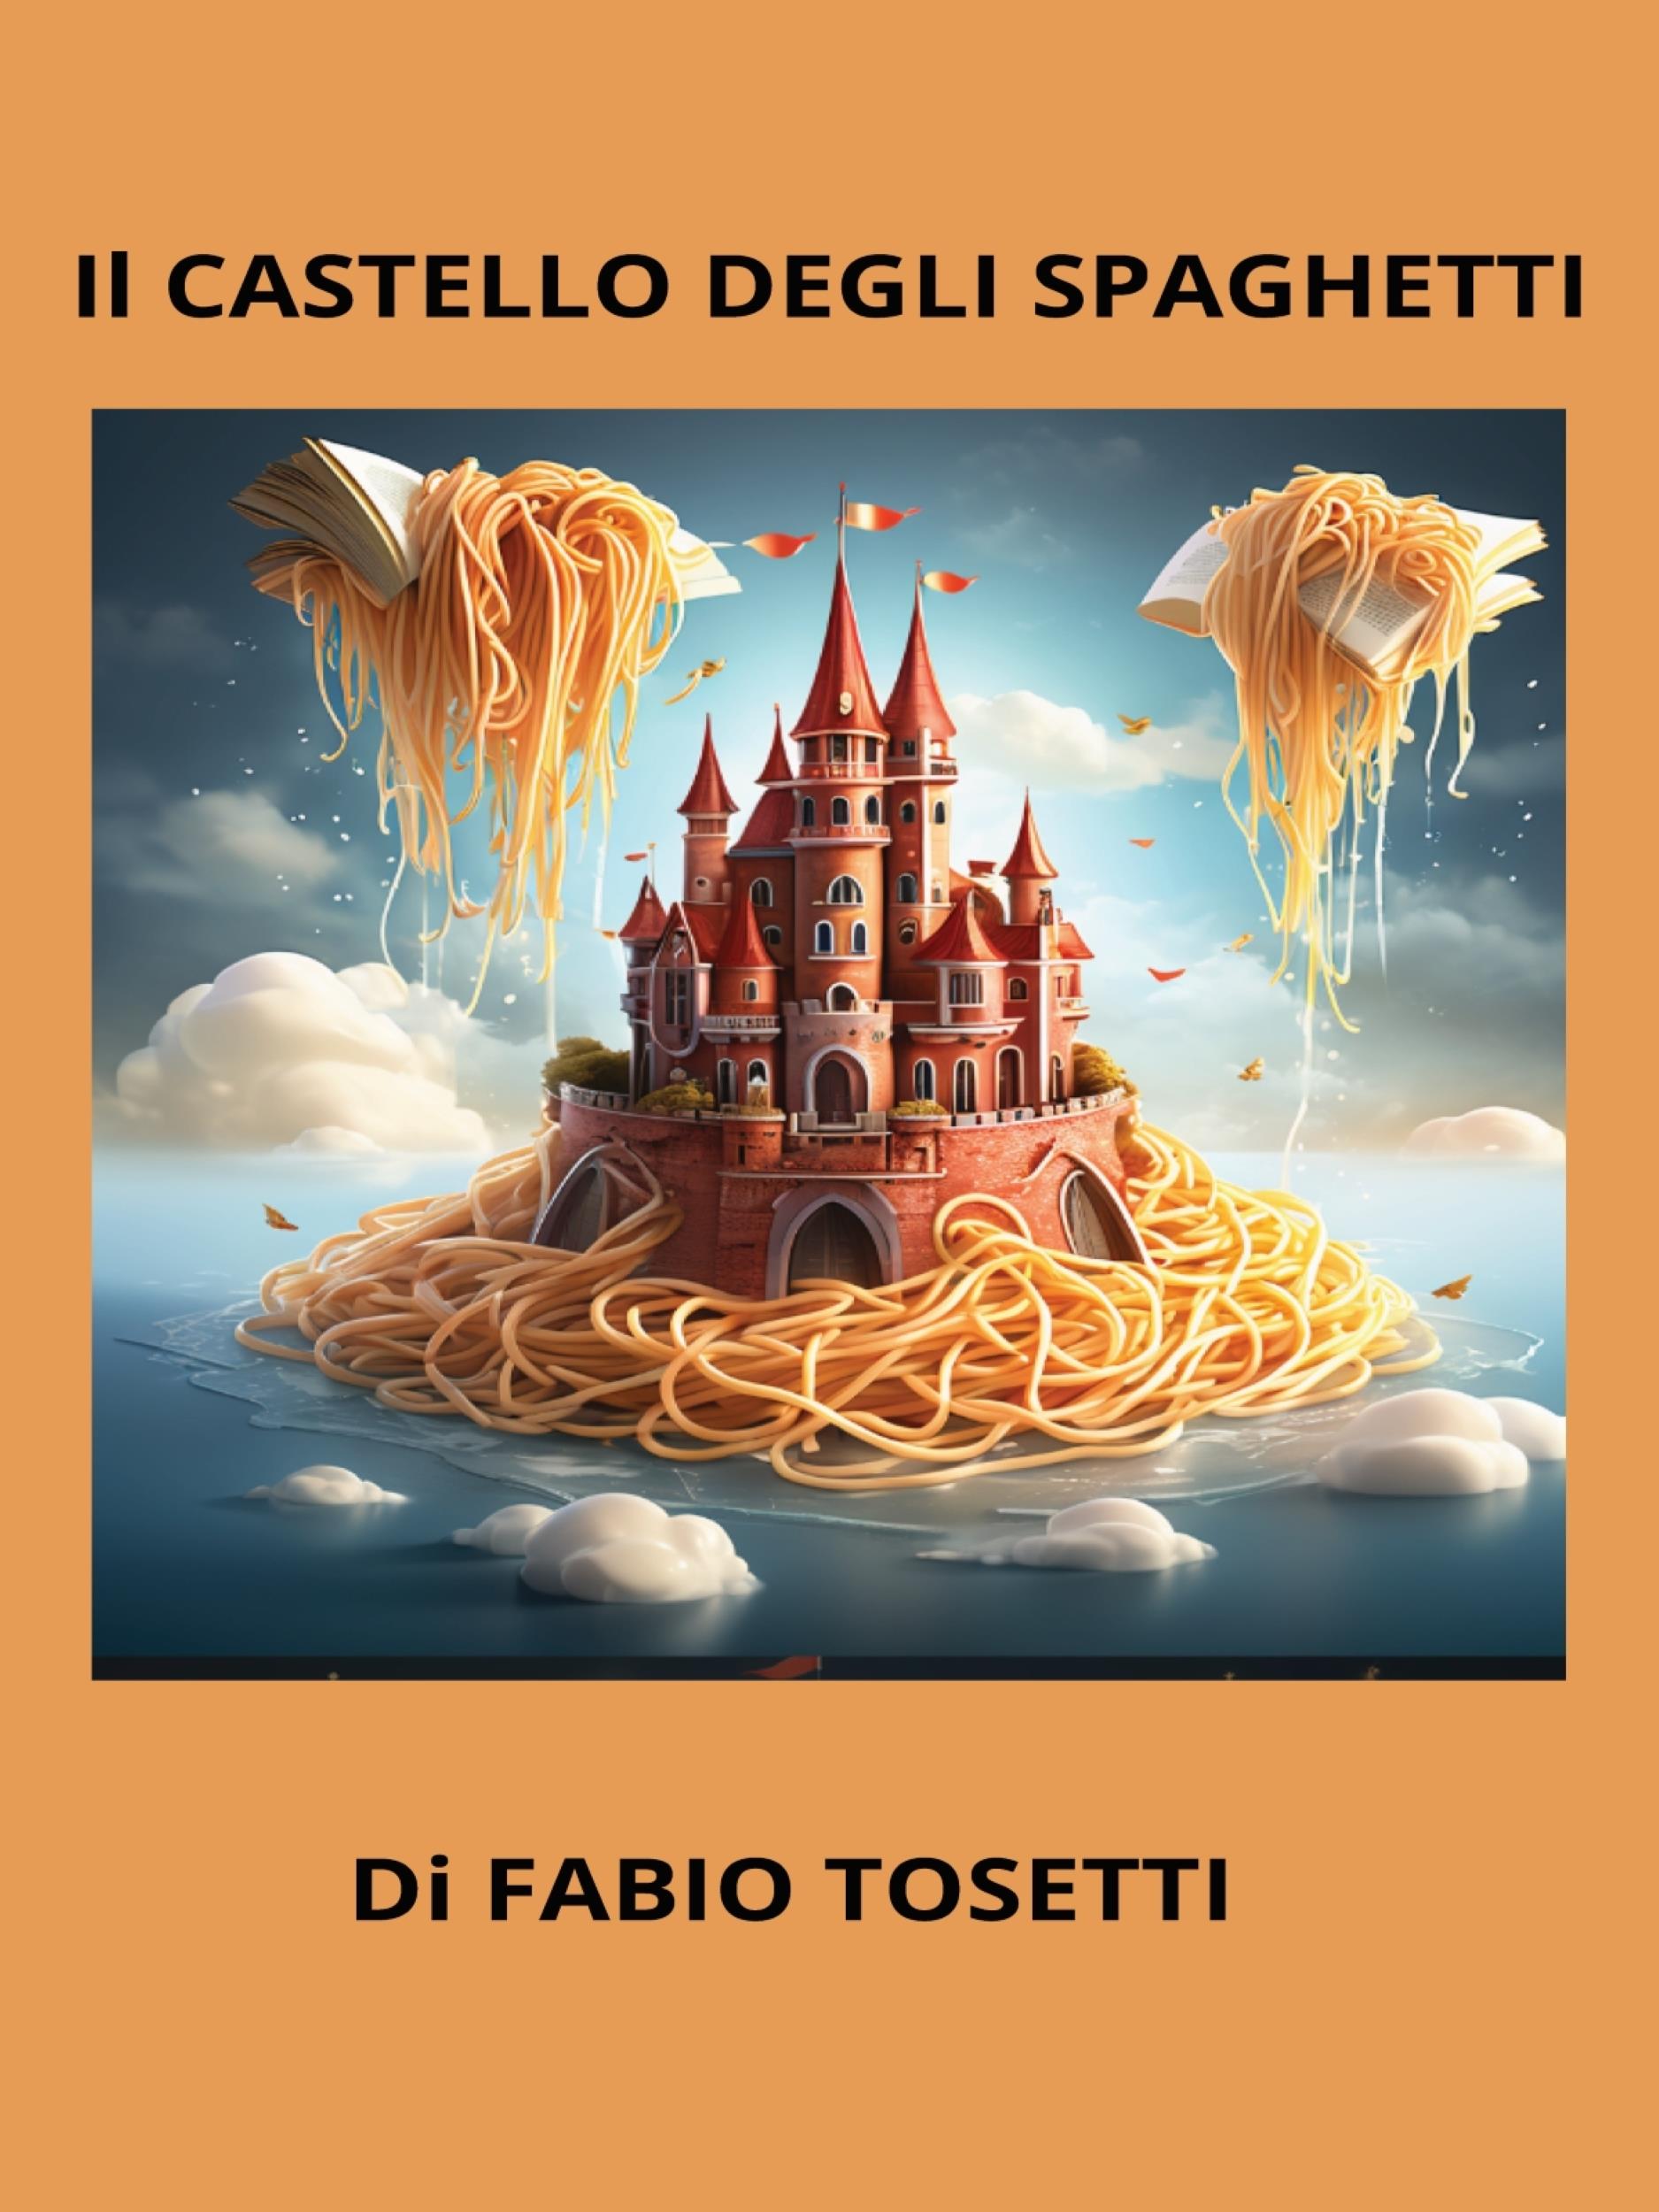 Il Castello degli spaghetti